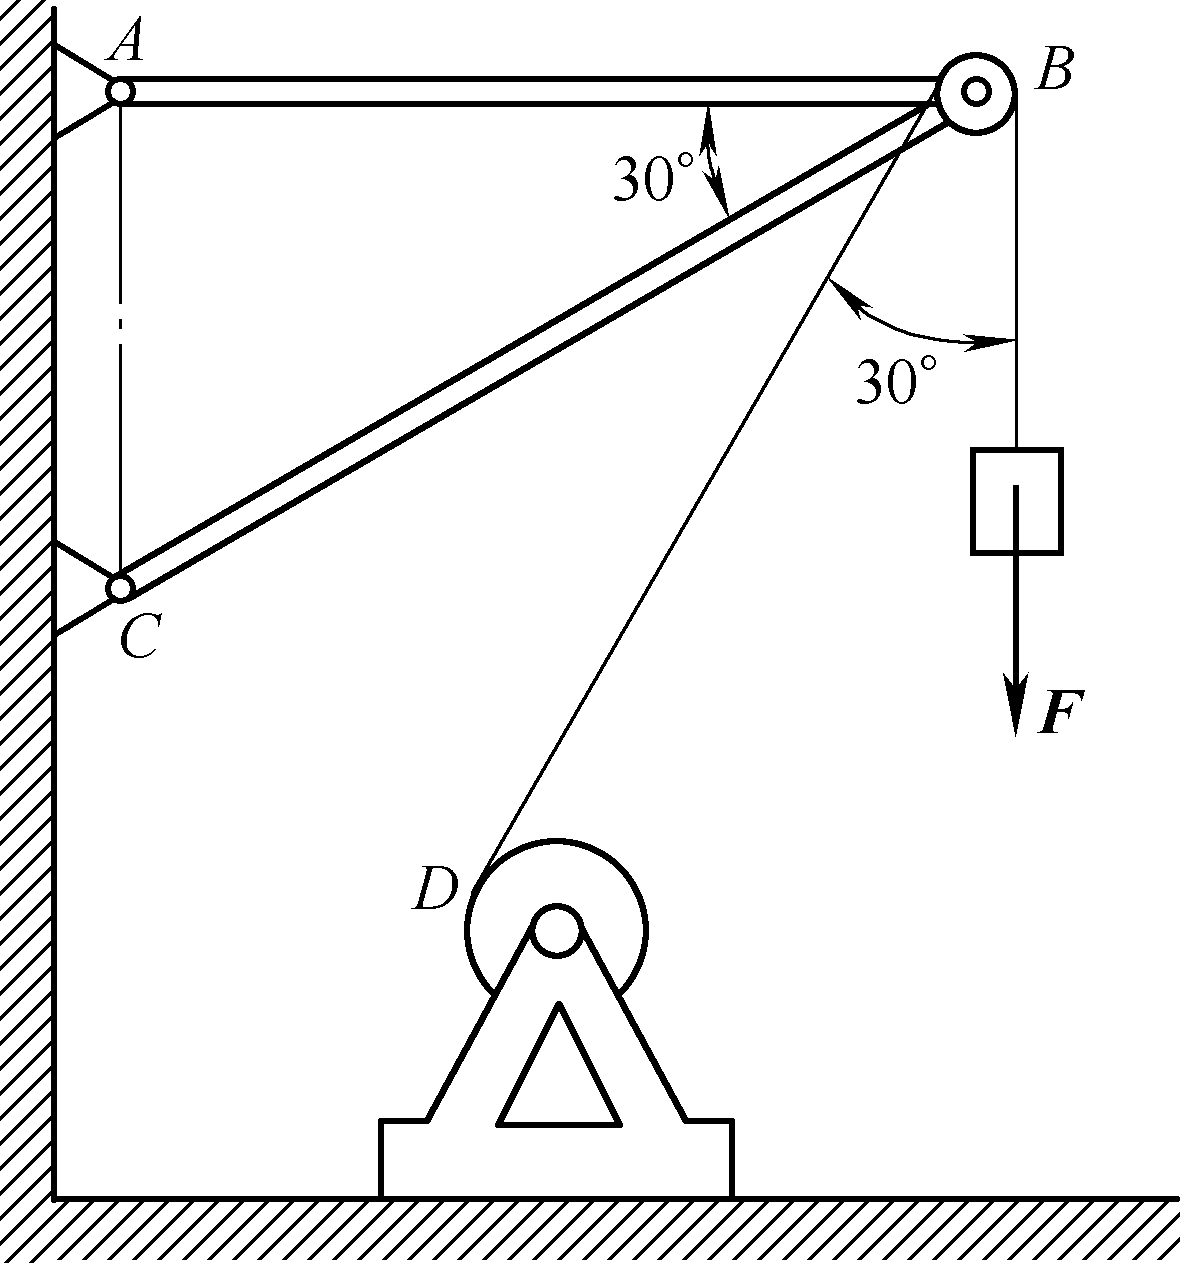 物体重f＝20 kn，用绳子挂在支架的滑轮b上，绳子的另一端接在铰车d上，如图所示。转动铰车，物体便